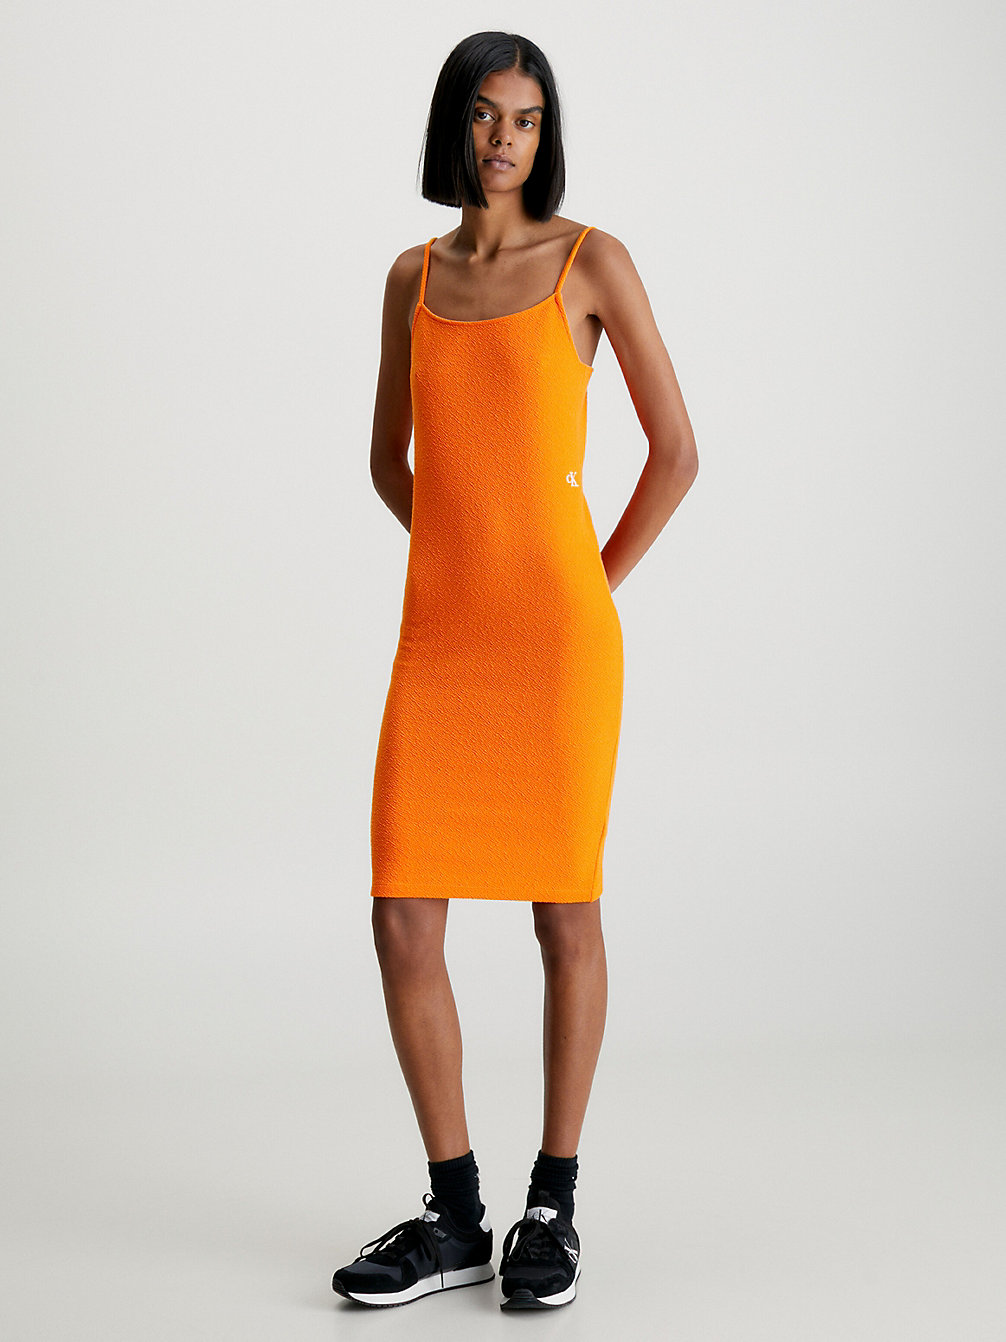 VIBRANT ORANGE Seersucker Stretch Mini Dress undefined women Calvin Klein